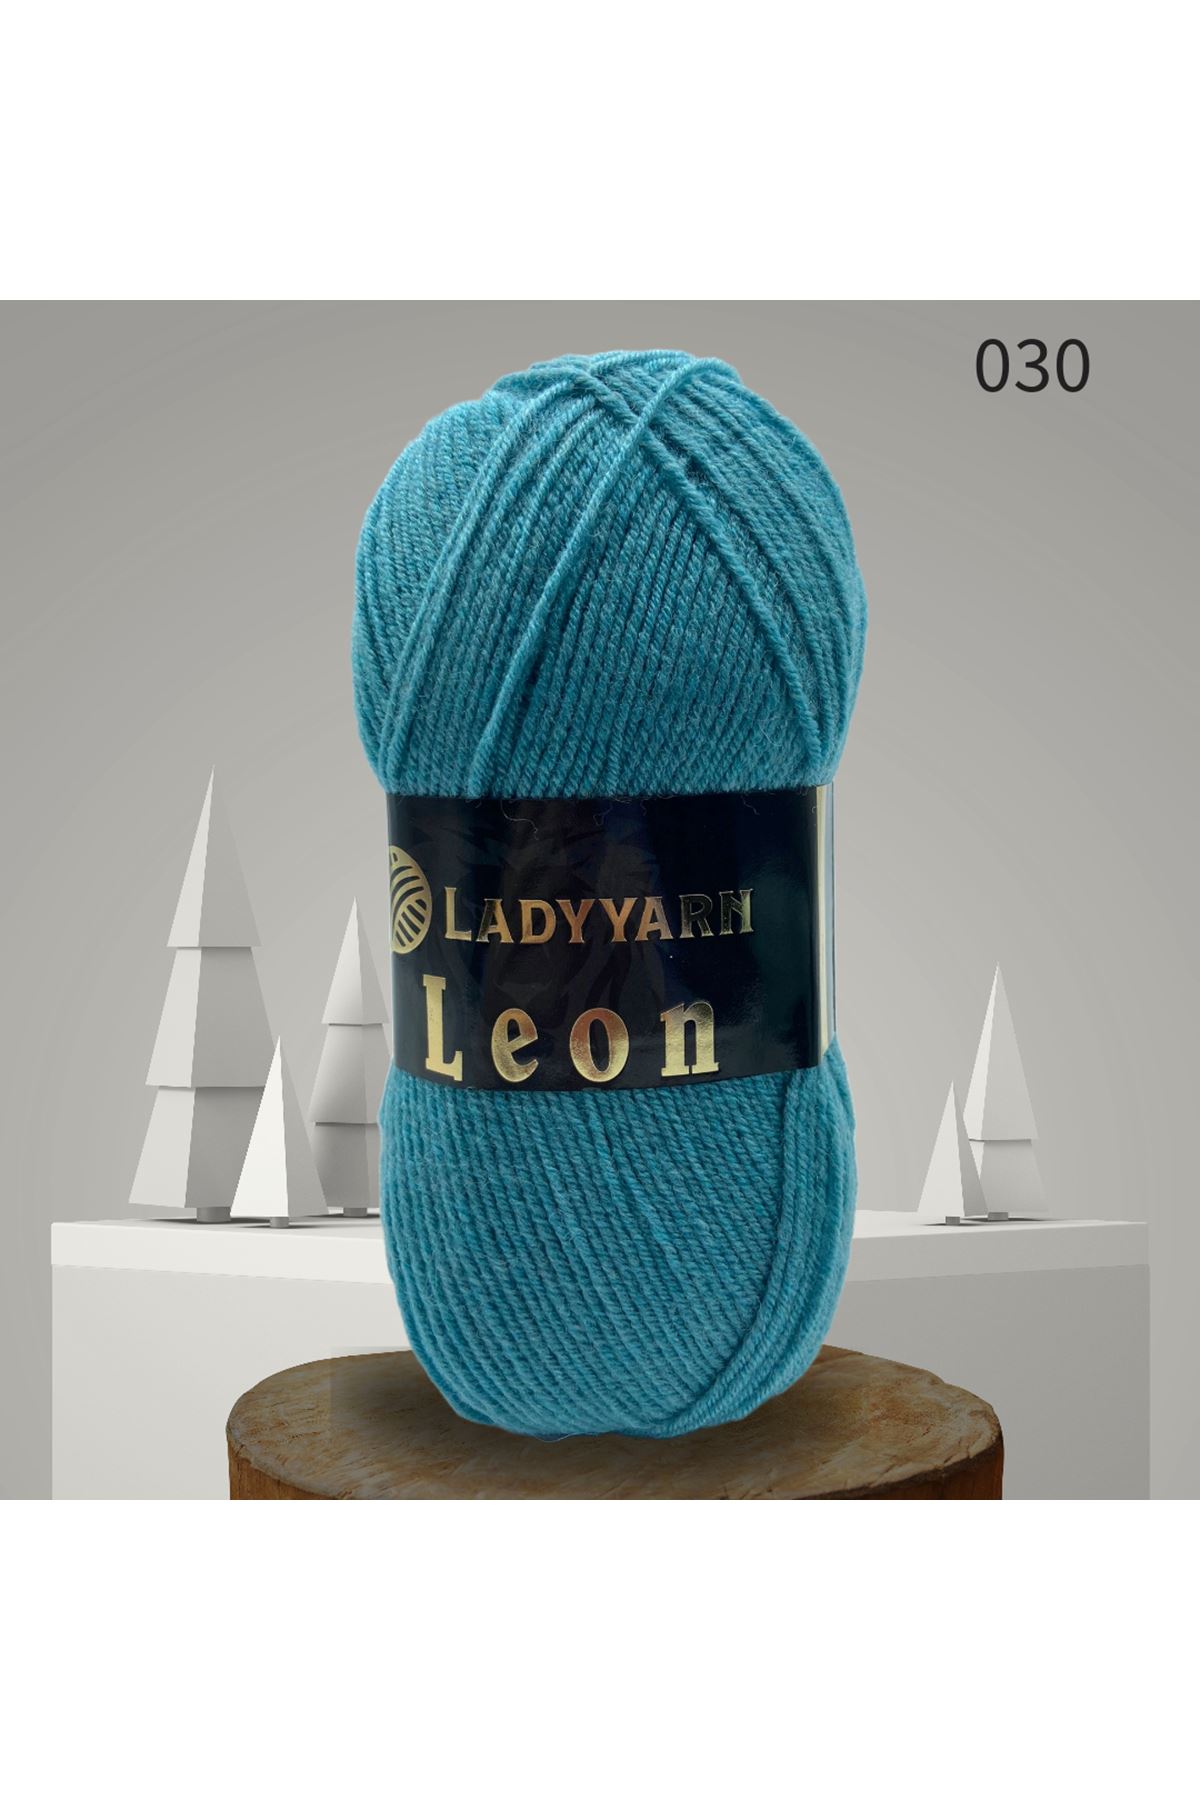 Lady Yarn Leon %49 Yünlü 030 Firuze